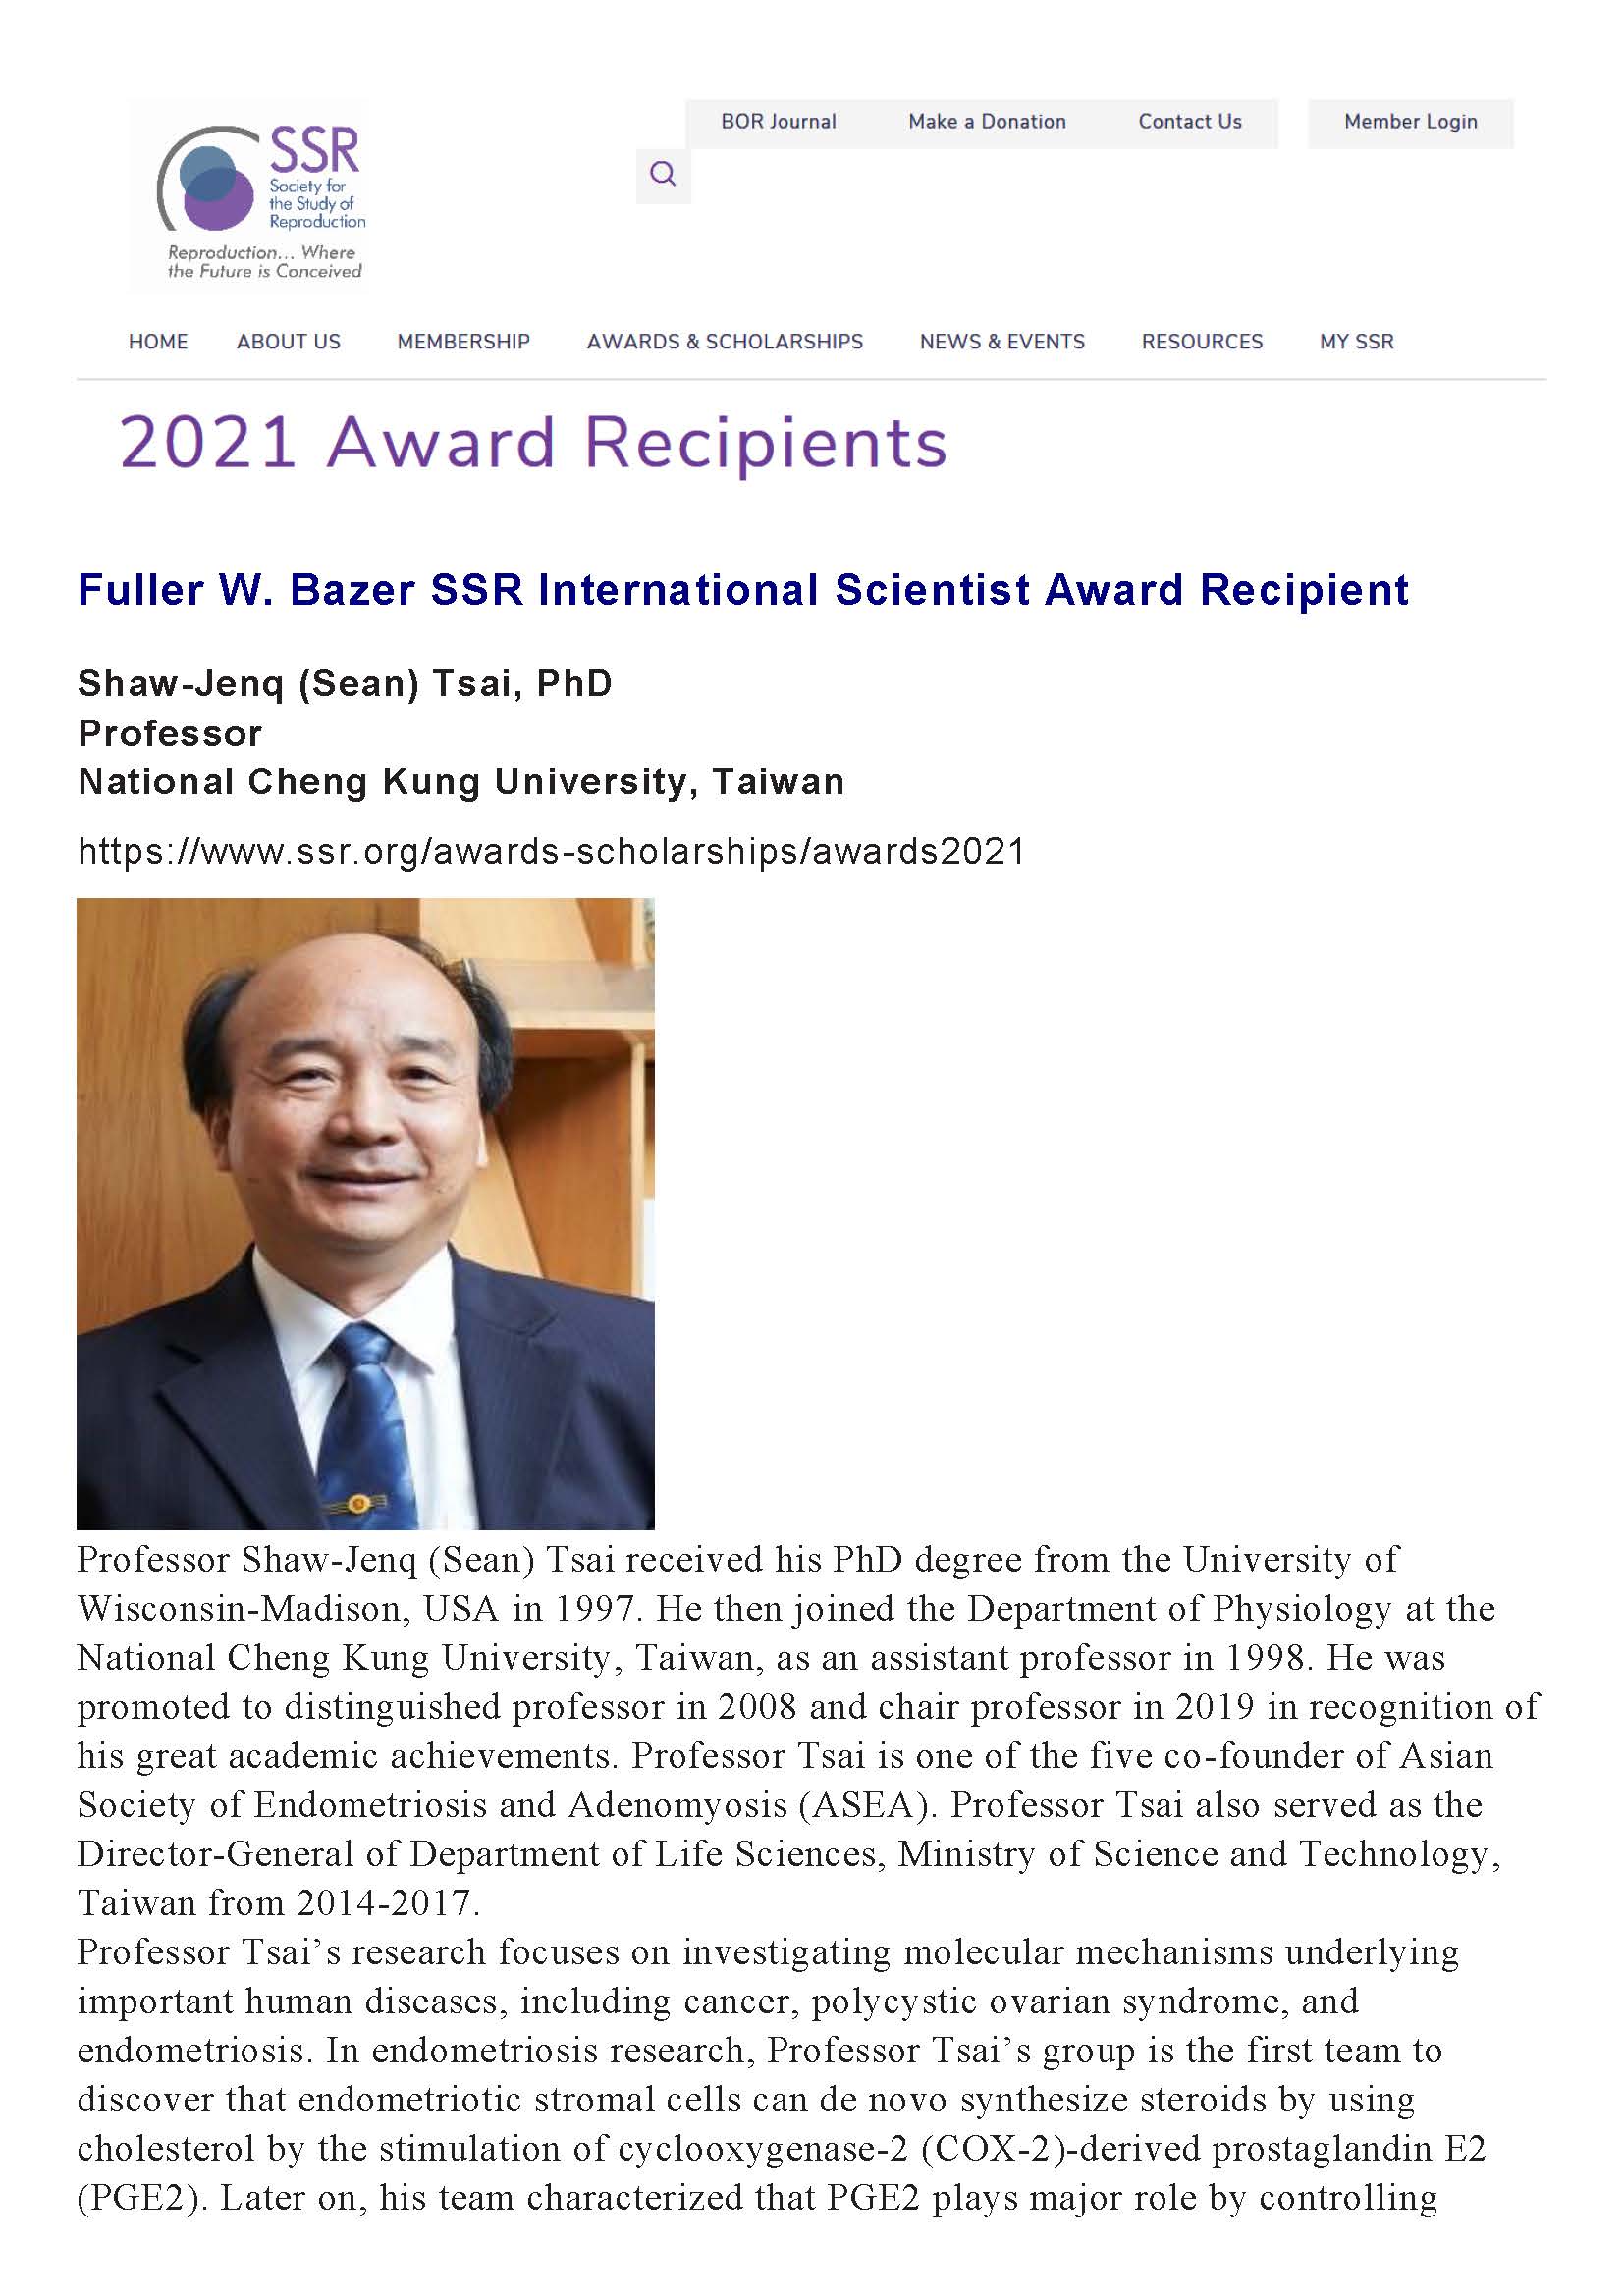 Fuller W. Bazer SSR International Scientist Award Recipient